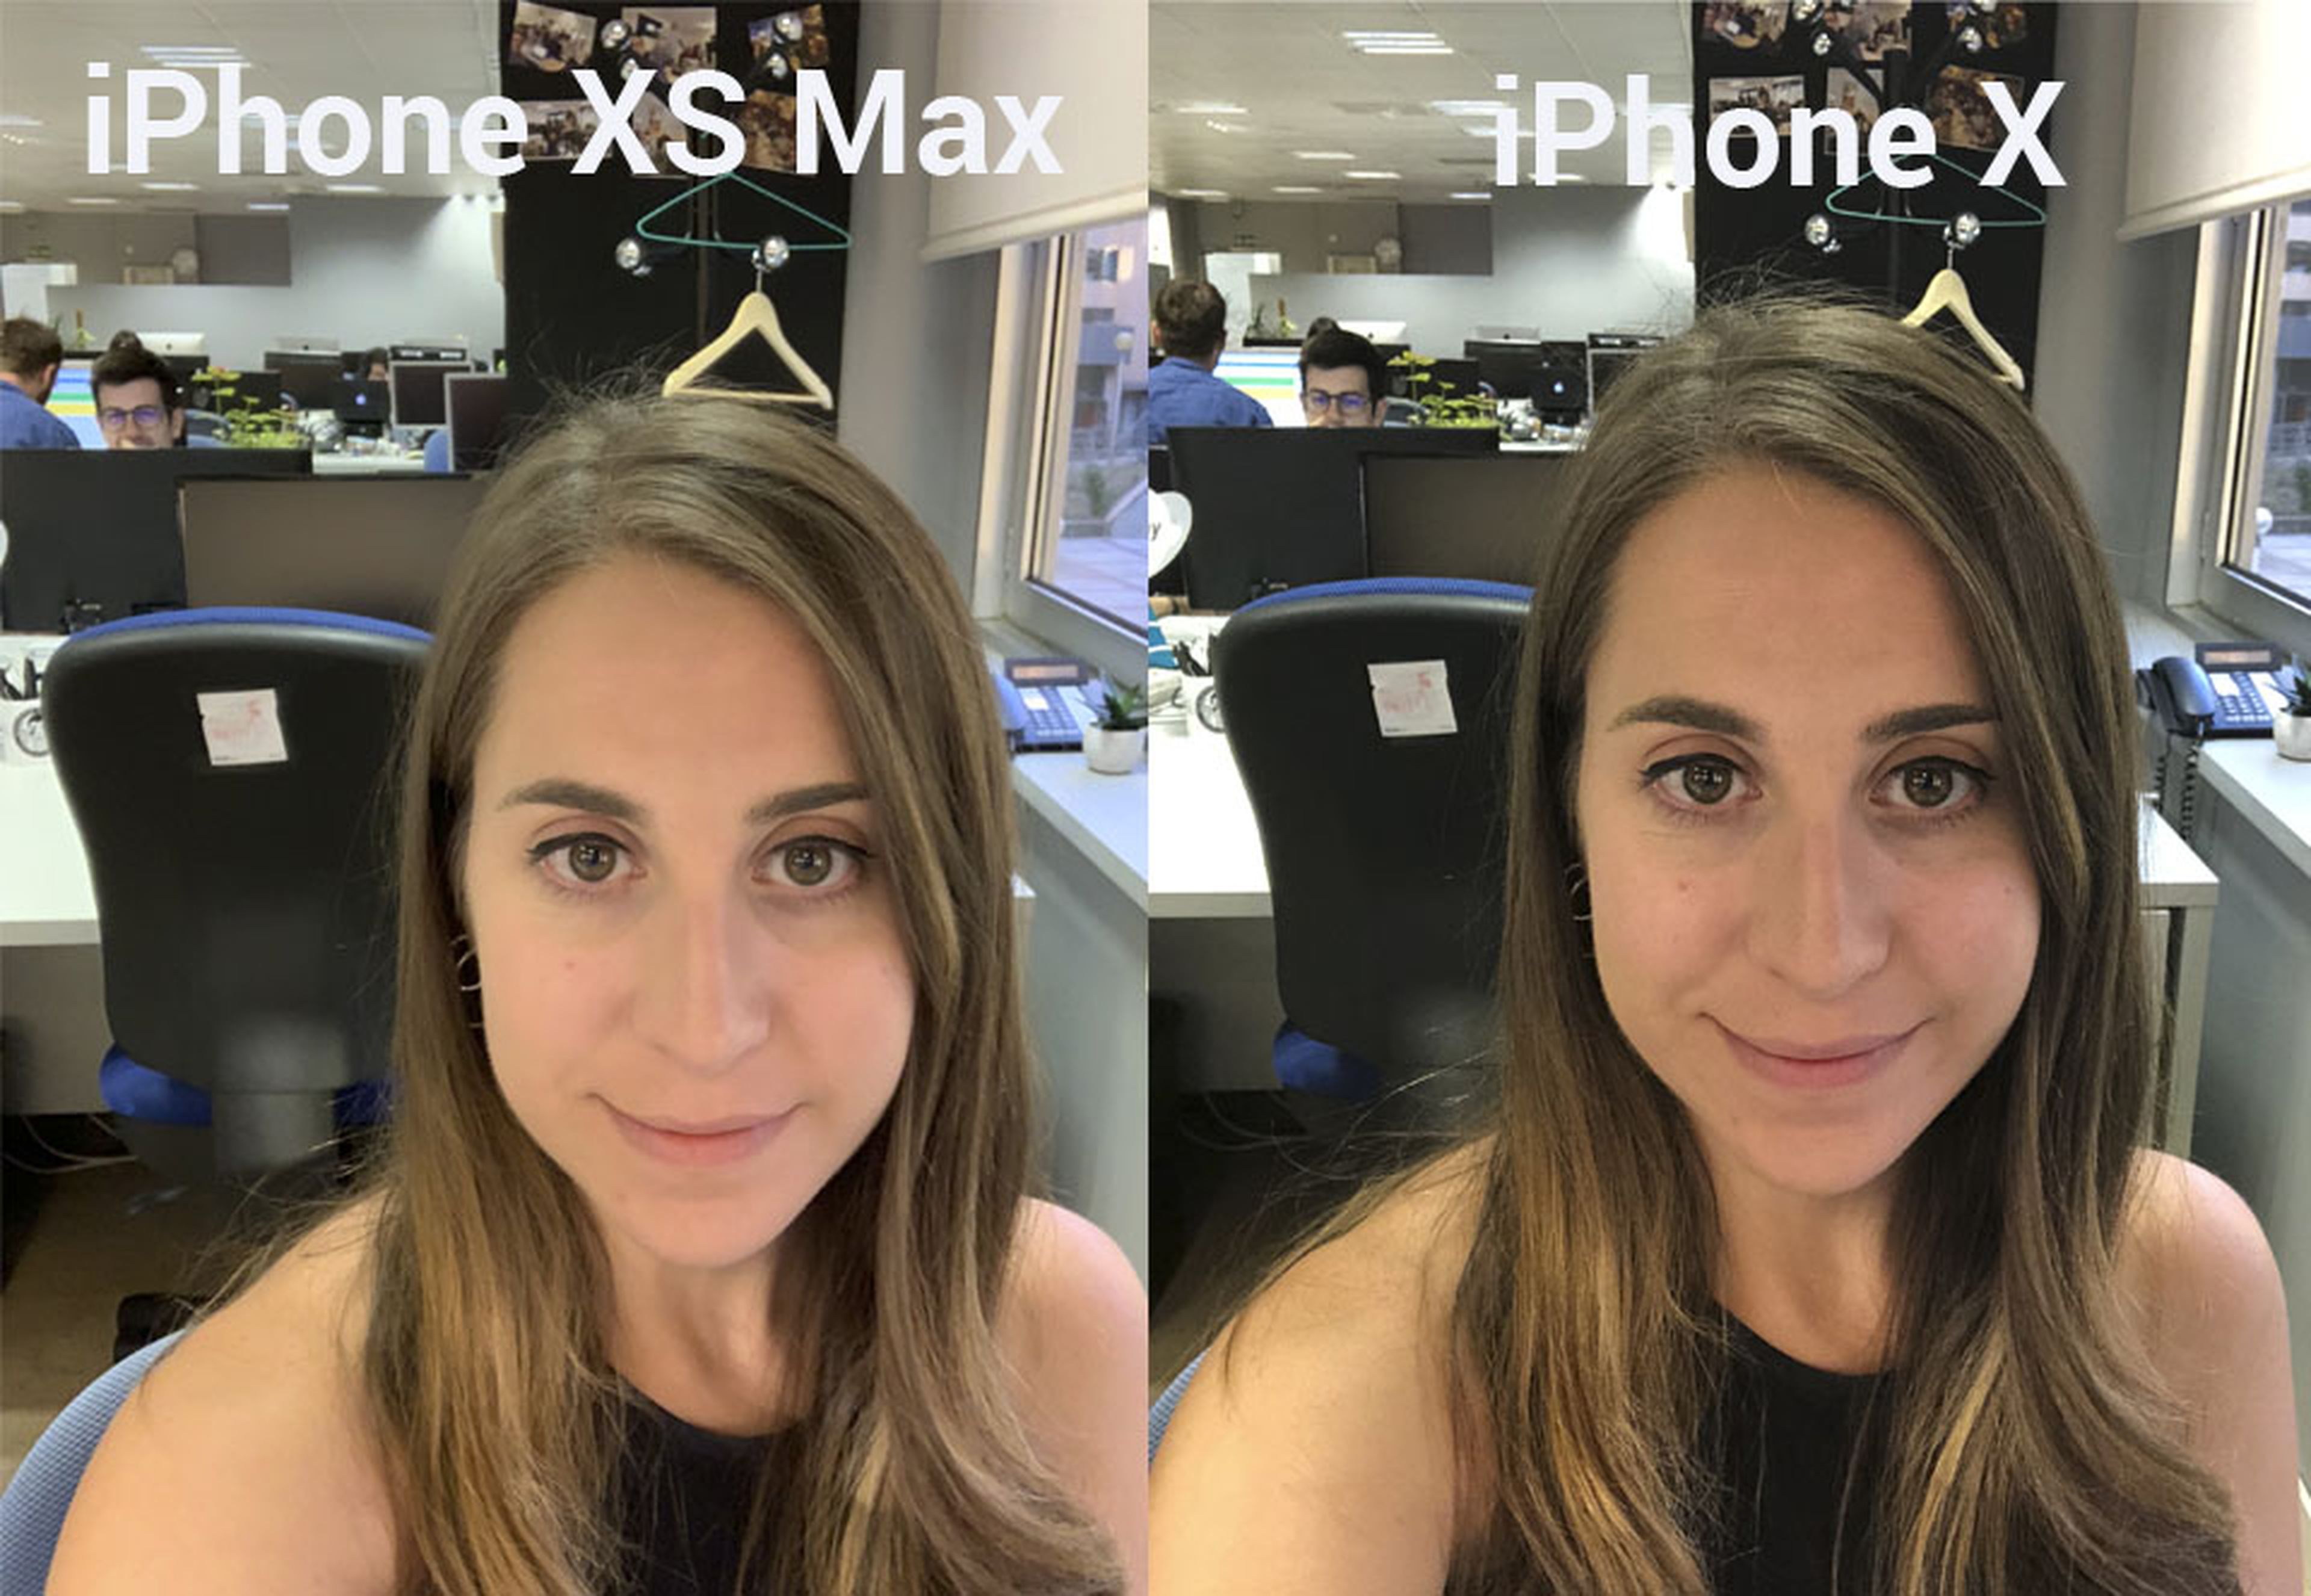 Selfie con el iPhone X y el iPhone XS Max SmartHDR activado